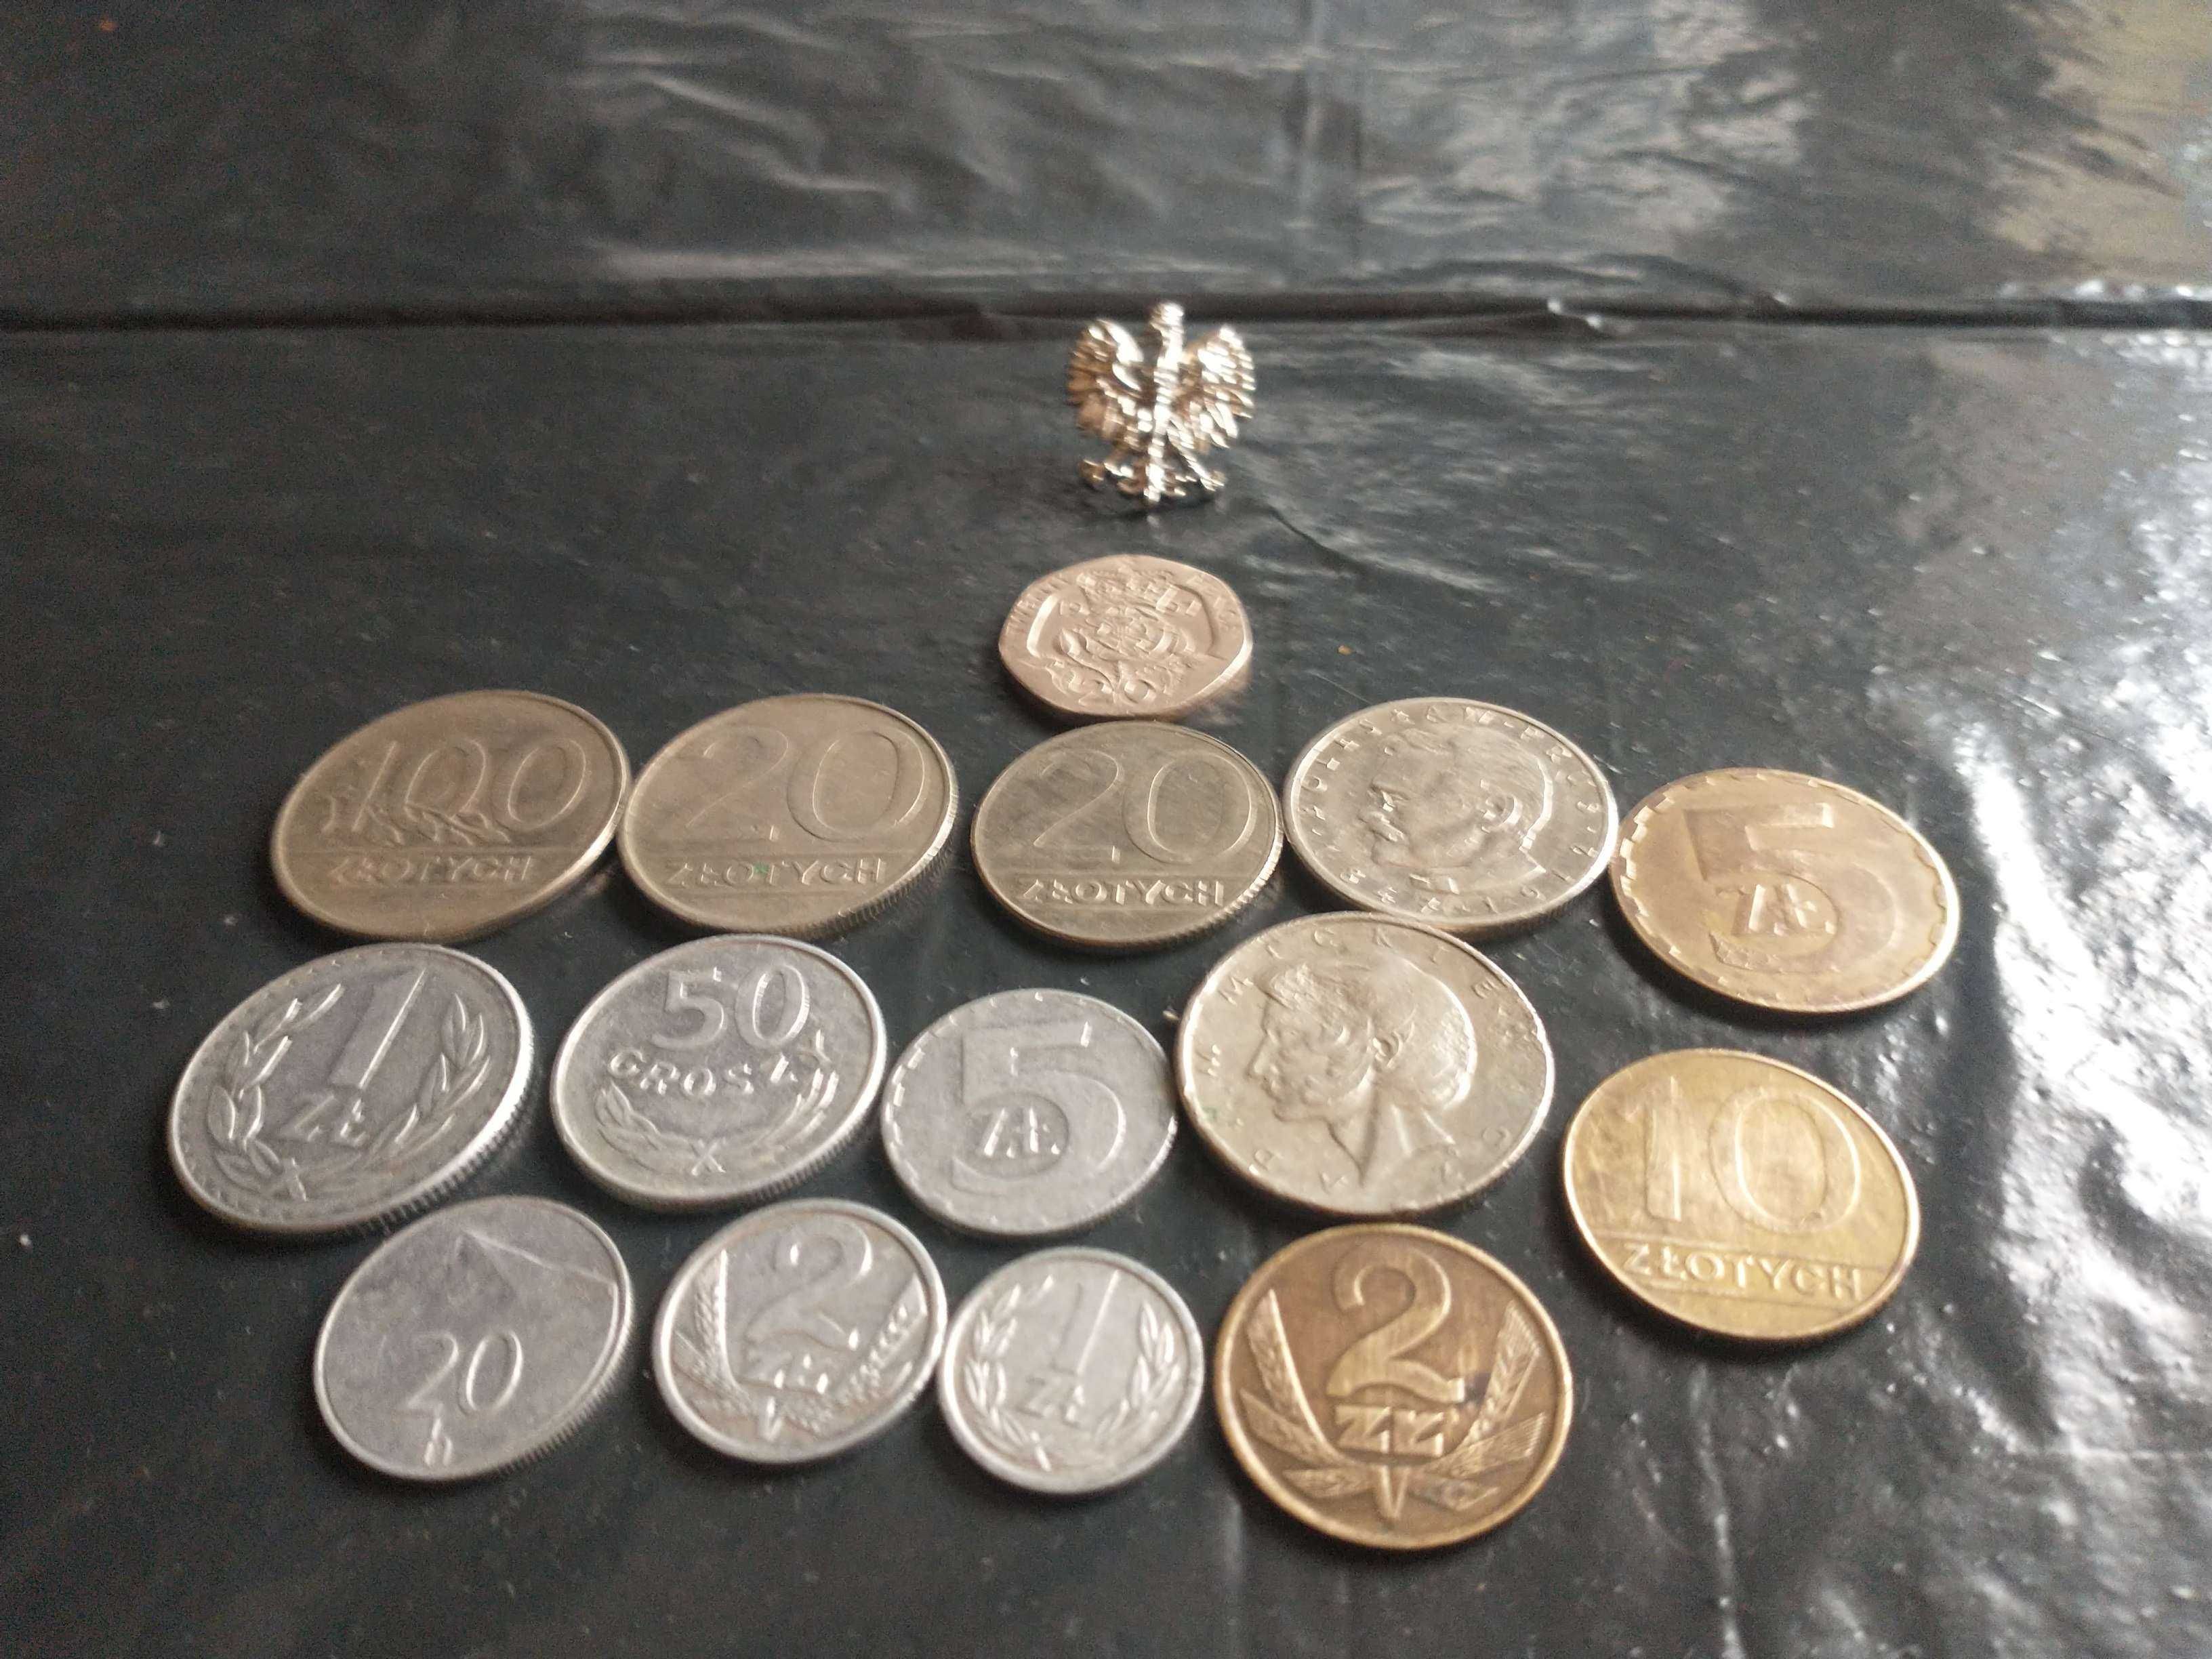 Oto moja kolekcja monet wraz z królową Elżbietą II na sprzedaż.